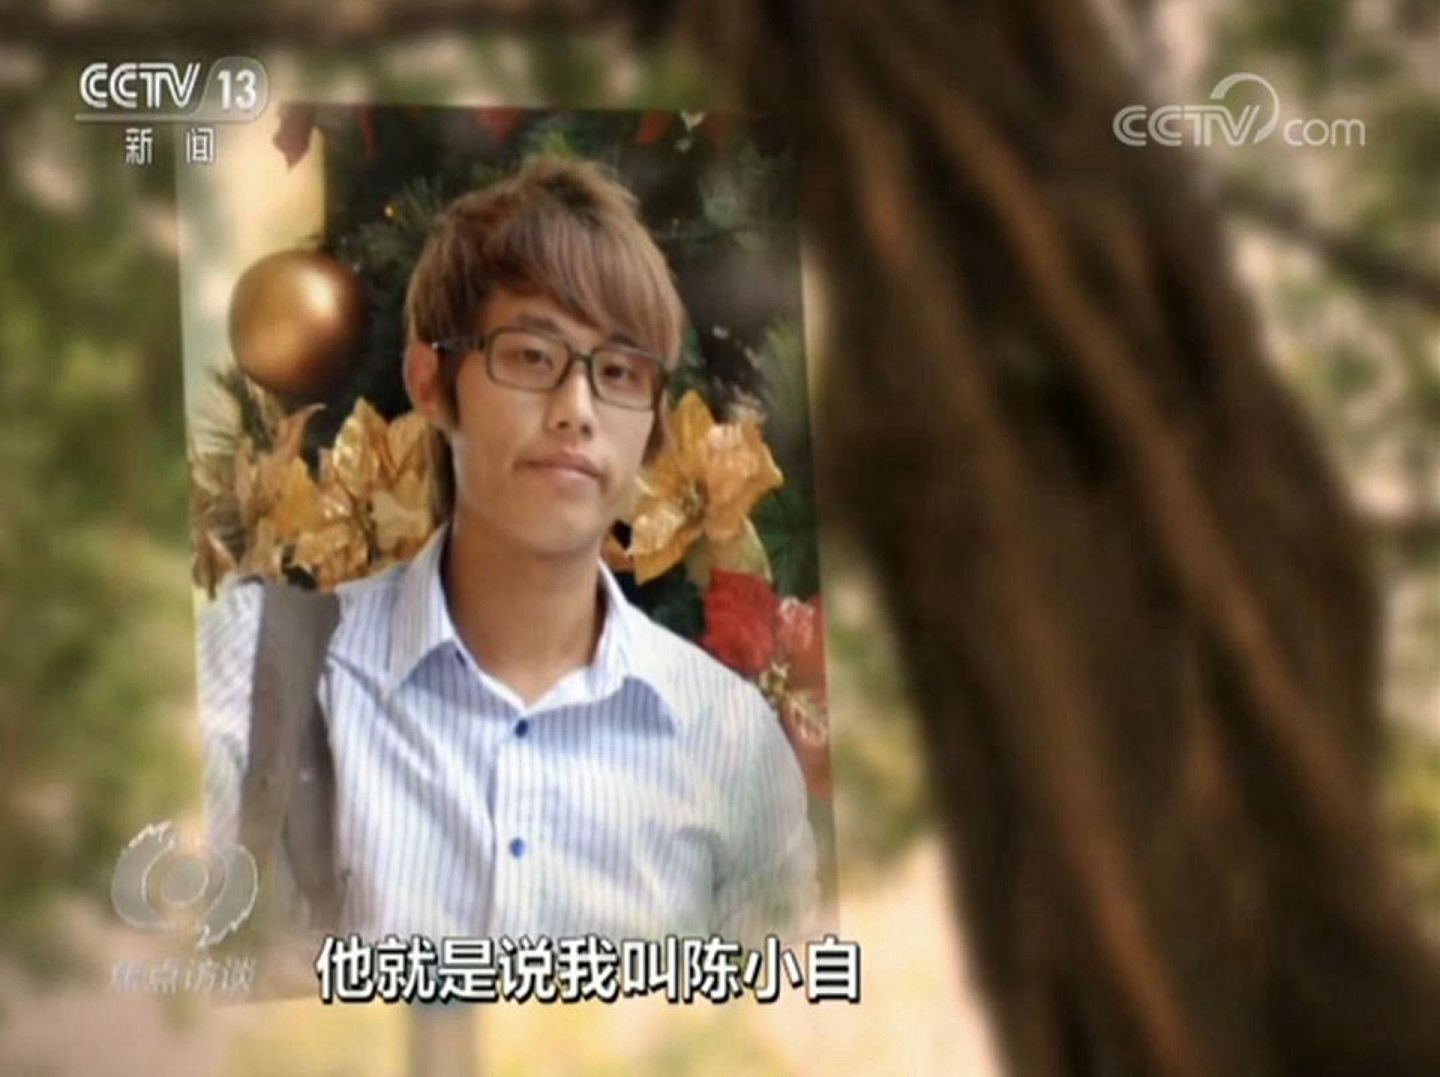 据报道，“小刘”是国内某大学政治学系的研究生，2012年作为交换生到台湾淡江大学学习，后被台方间谍联络，向其透露机密信息。（中国中央电视台视频截图）